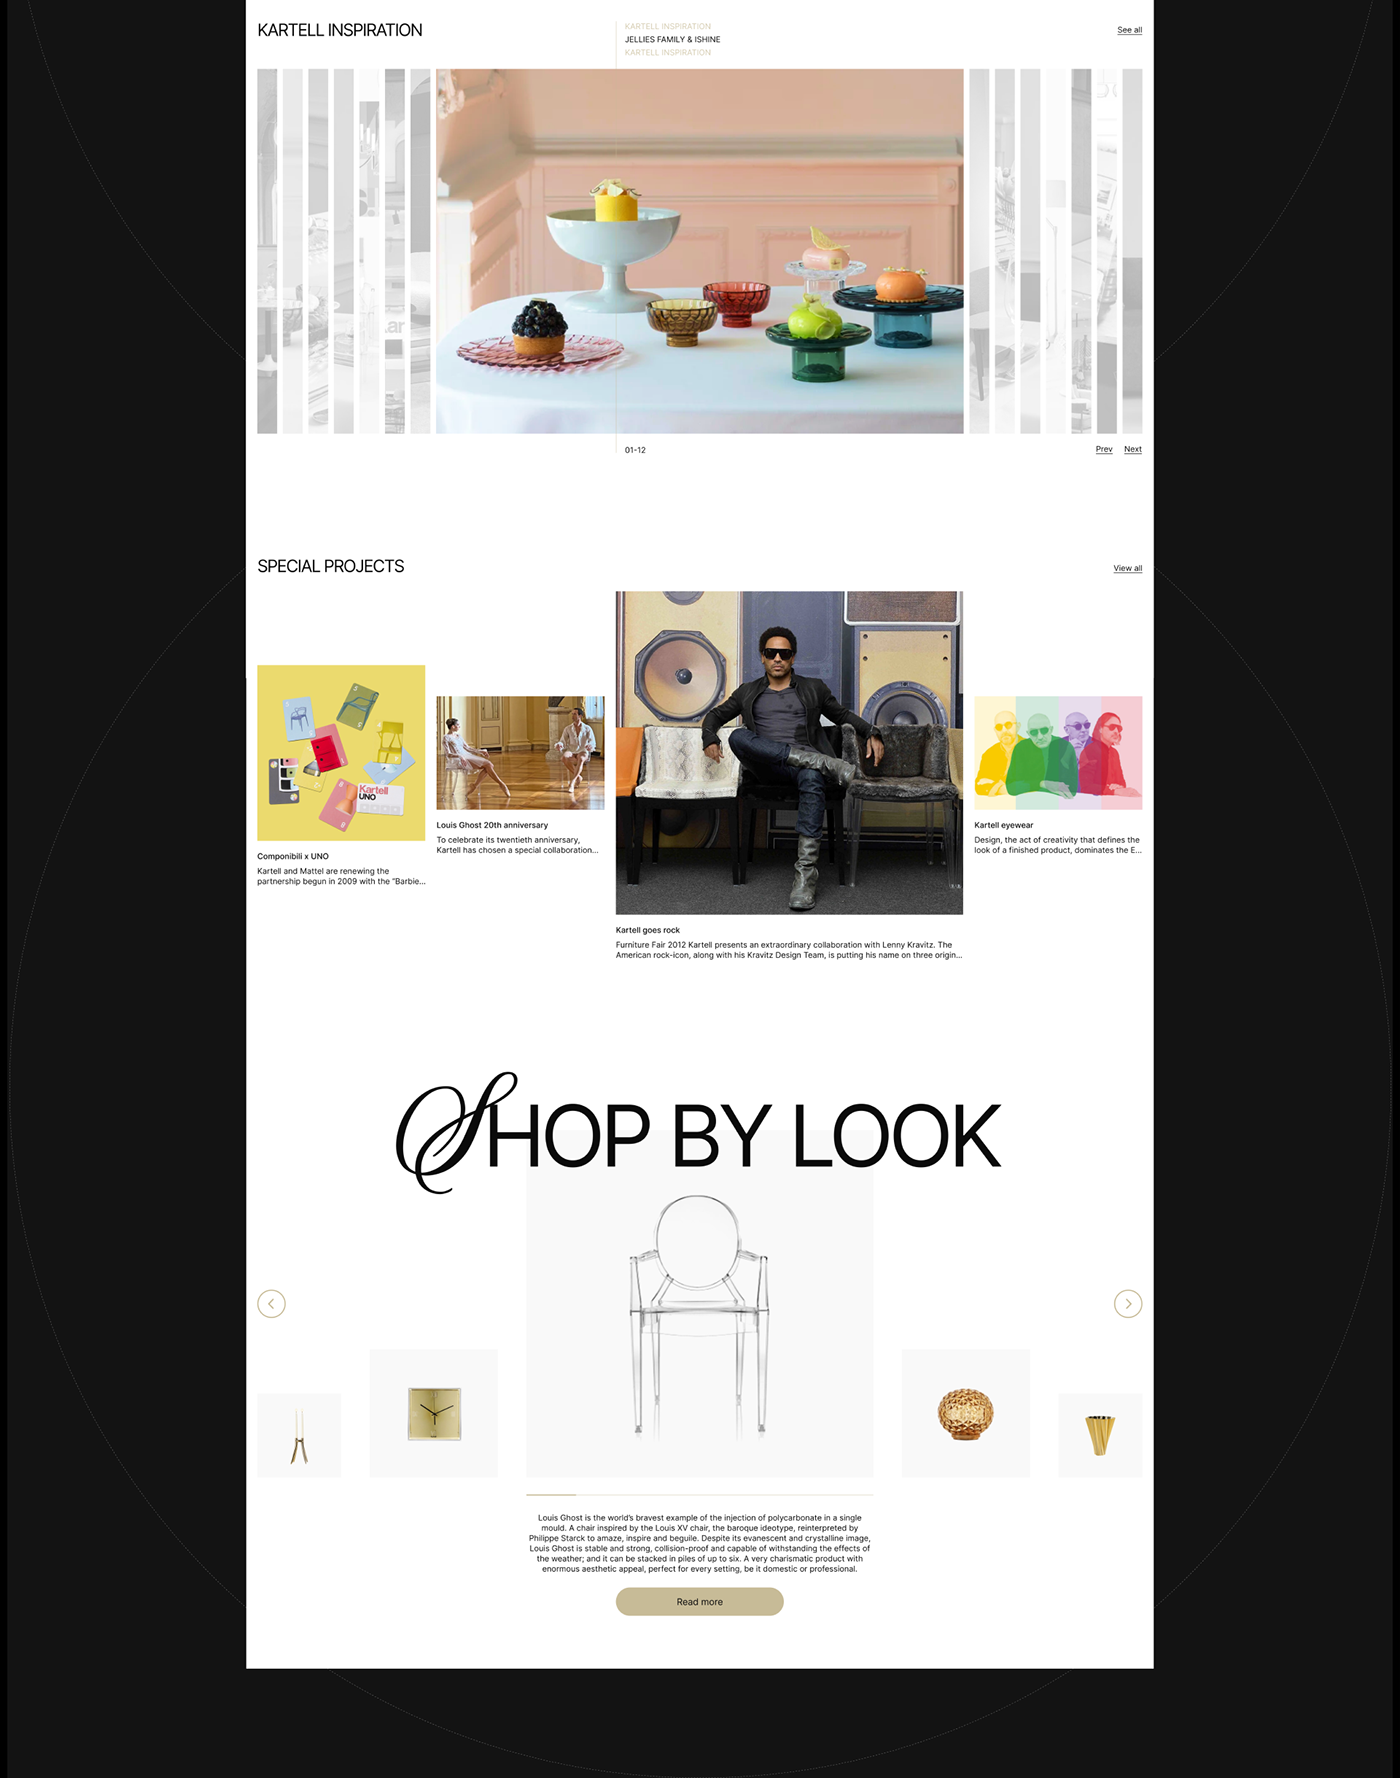 uiux ecommerce website redesign online store Onlineshop Adobe XD Adobe Portfolio kartell UserInterface ux